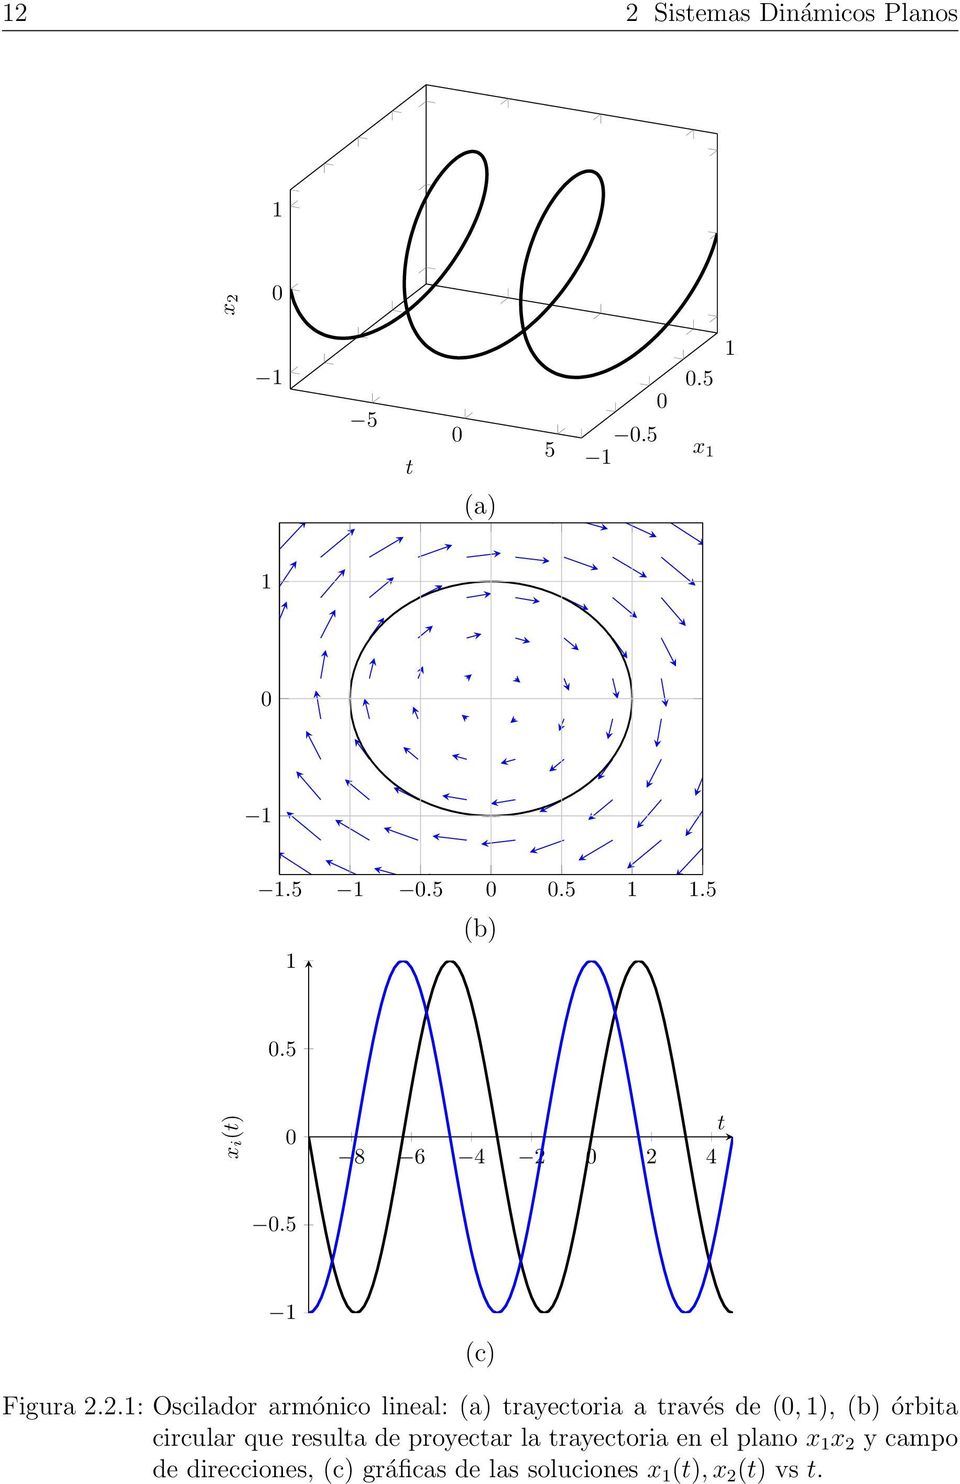 0 2 4 t 0.5 1 (c) Figura 2.2.1: Oscilador armónico lineal: (a) trayectoria a través de (0,